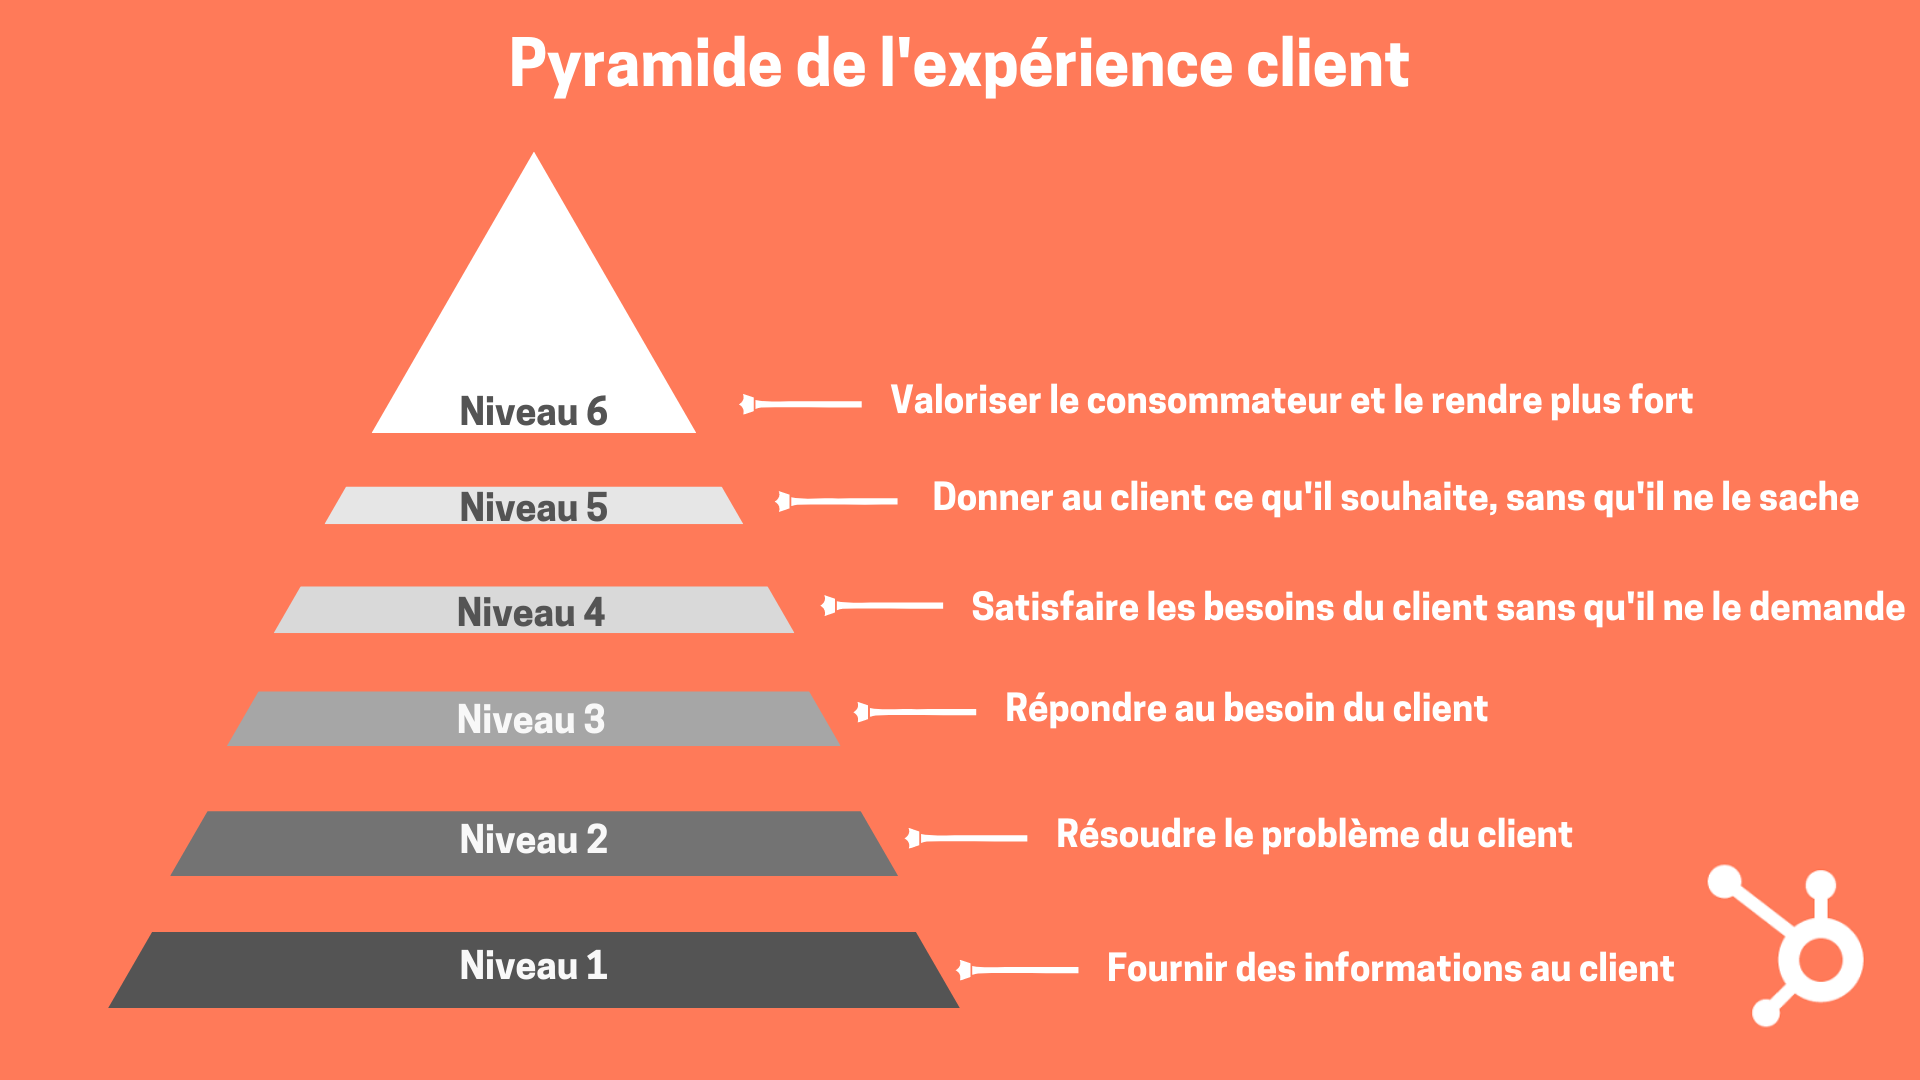 Pyramide expérience client - illustration